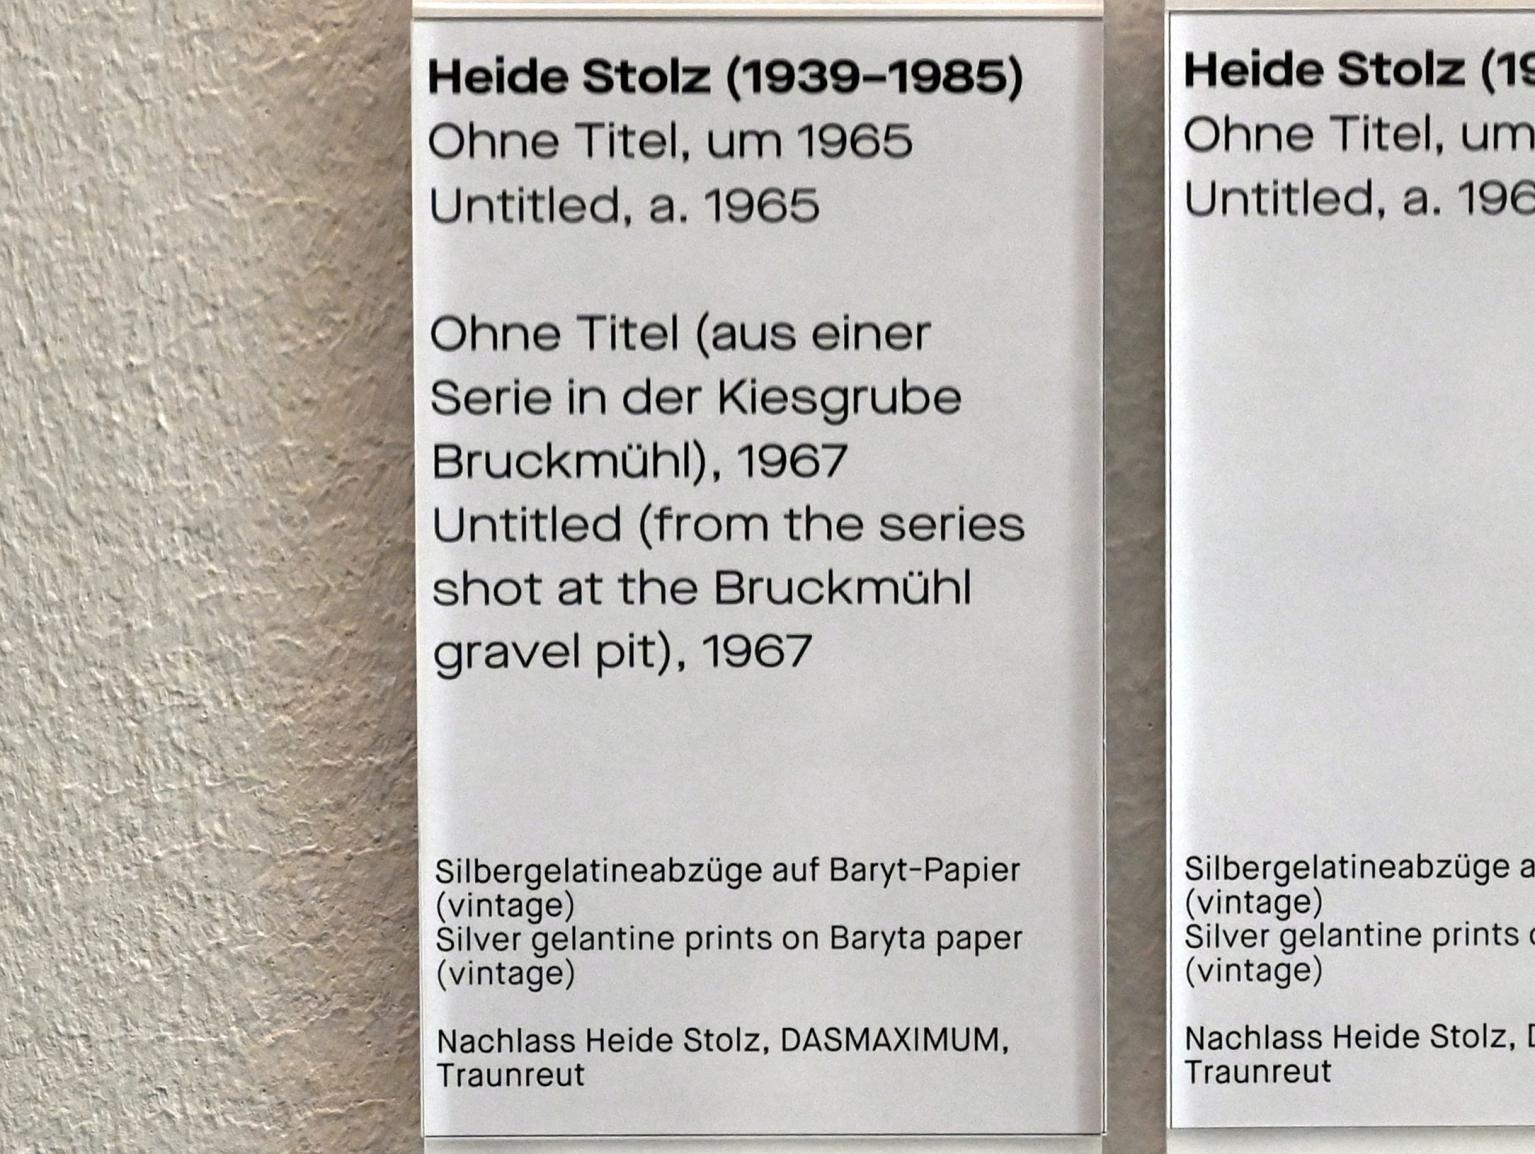 Heide Stolz (1960–1969), Ohne Titel (aus einer Serie in der Kiesgrube Bruckmühl), Chemnitz, Museum Gunzenhauser, Saal 1.10 - Uwe Lausen und Heide Stolz, 1967, Bild 2/2